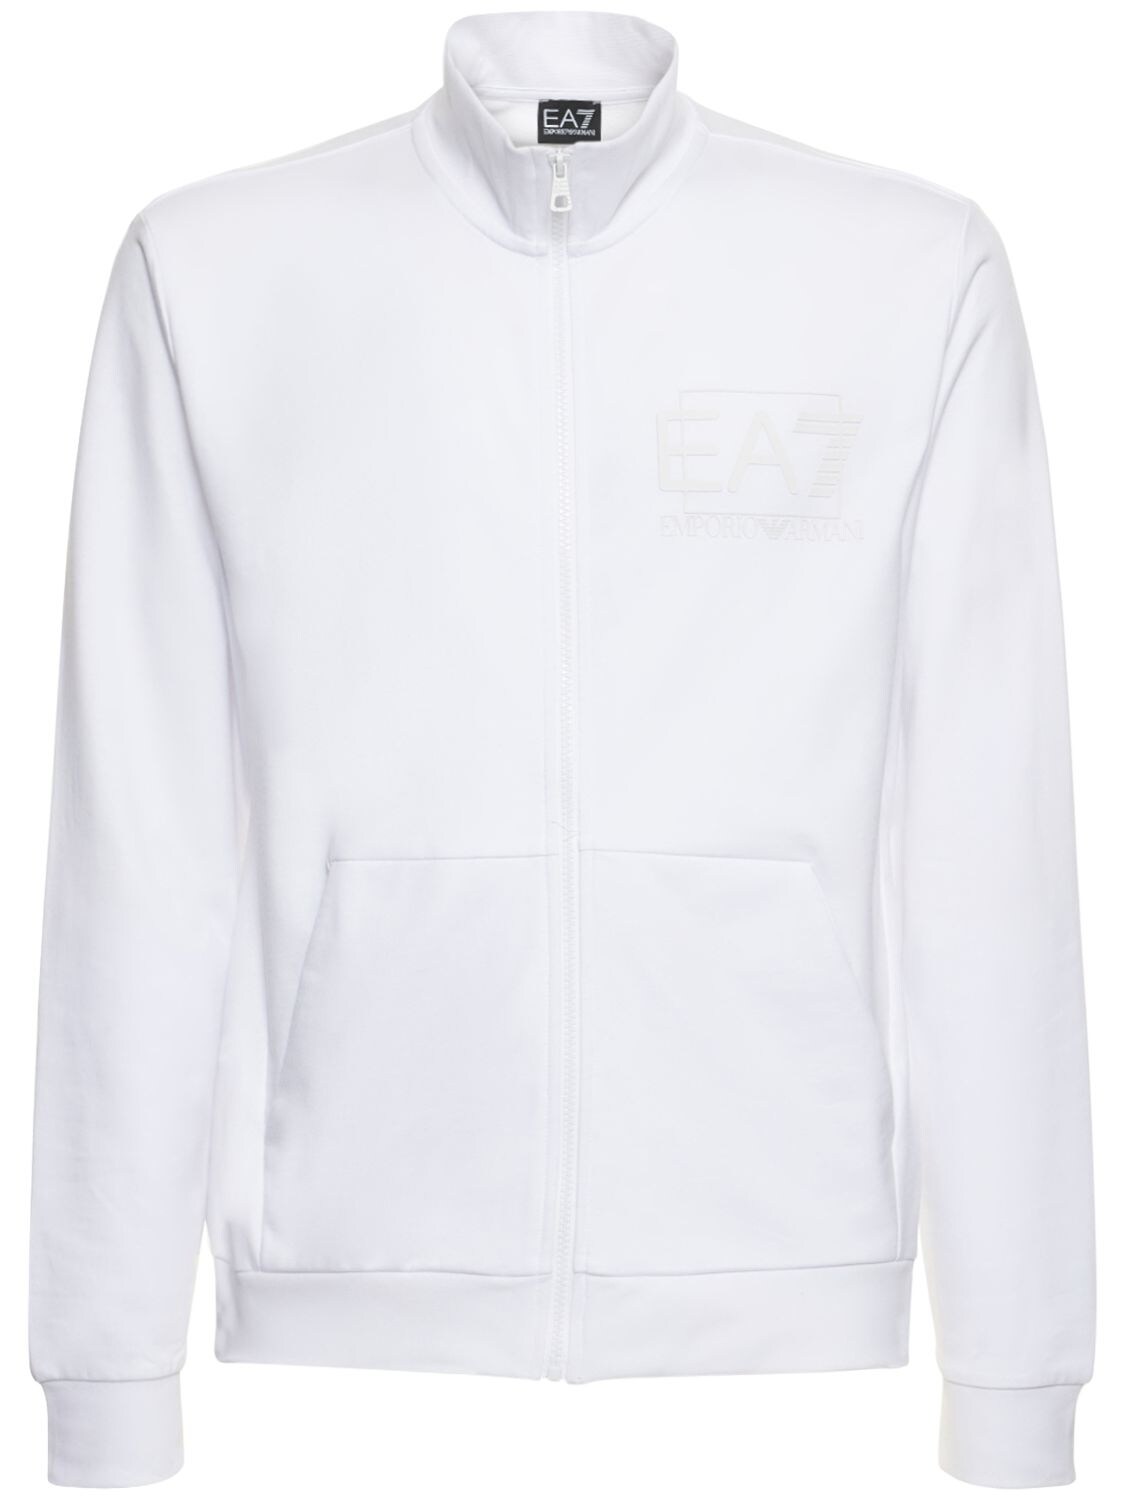 EA7 EMPORIO ARMANI Visibility Cotton Zip-up Sweatshirt